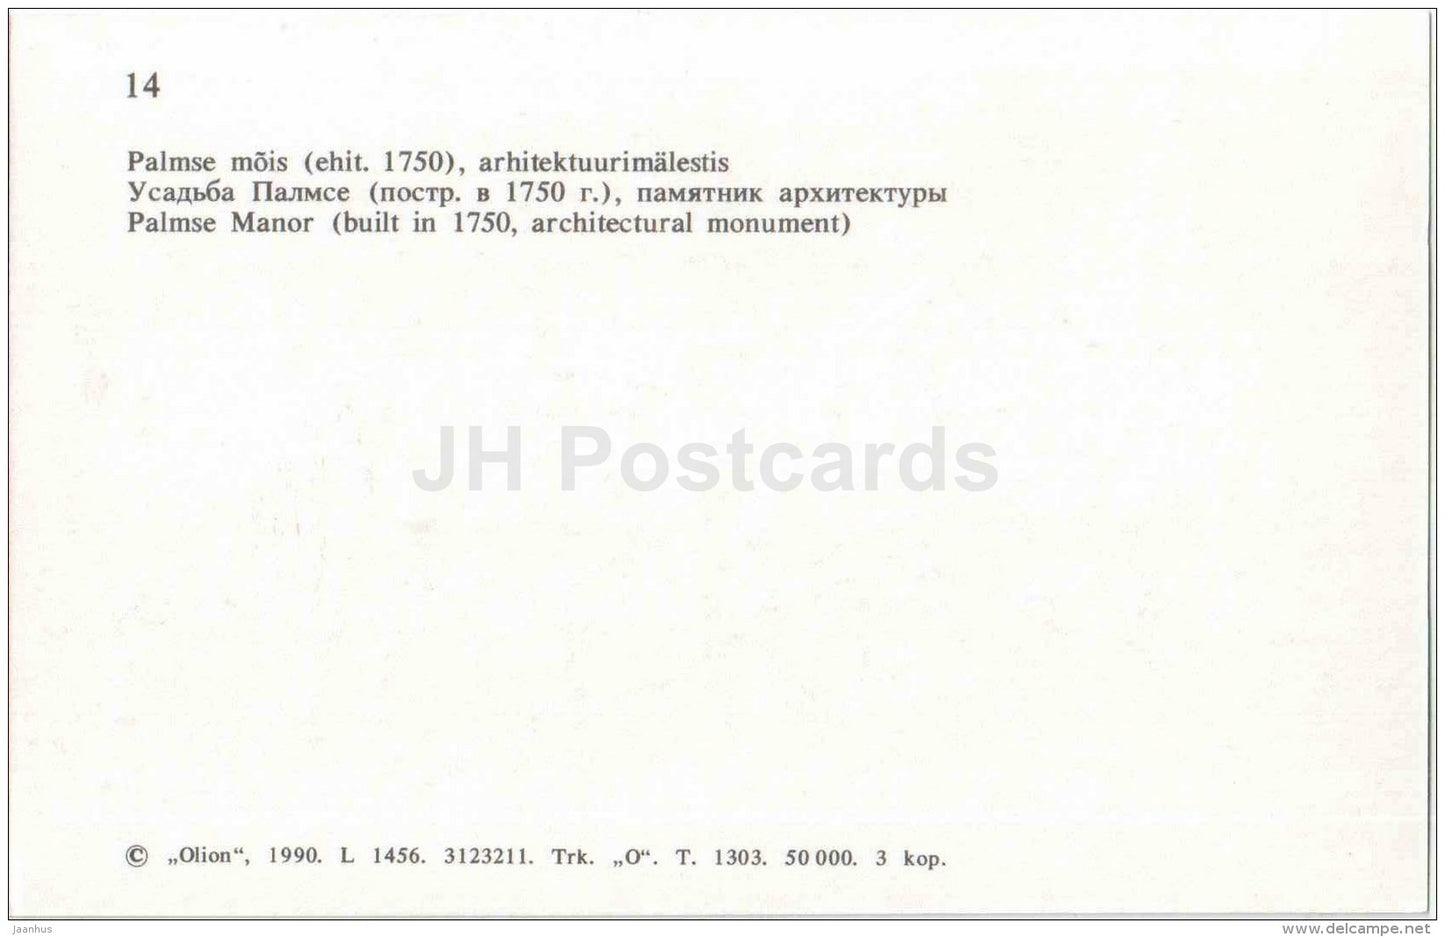 Palmse Manor - Võsu - Virumaa - OLD POSTCARD REPRODUCTION! - 1990 - Estonia USSR - unused - JH Postcards